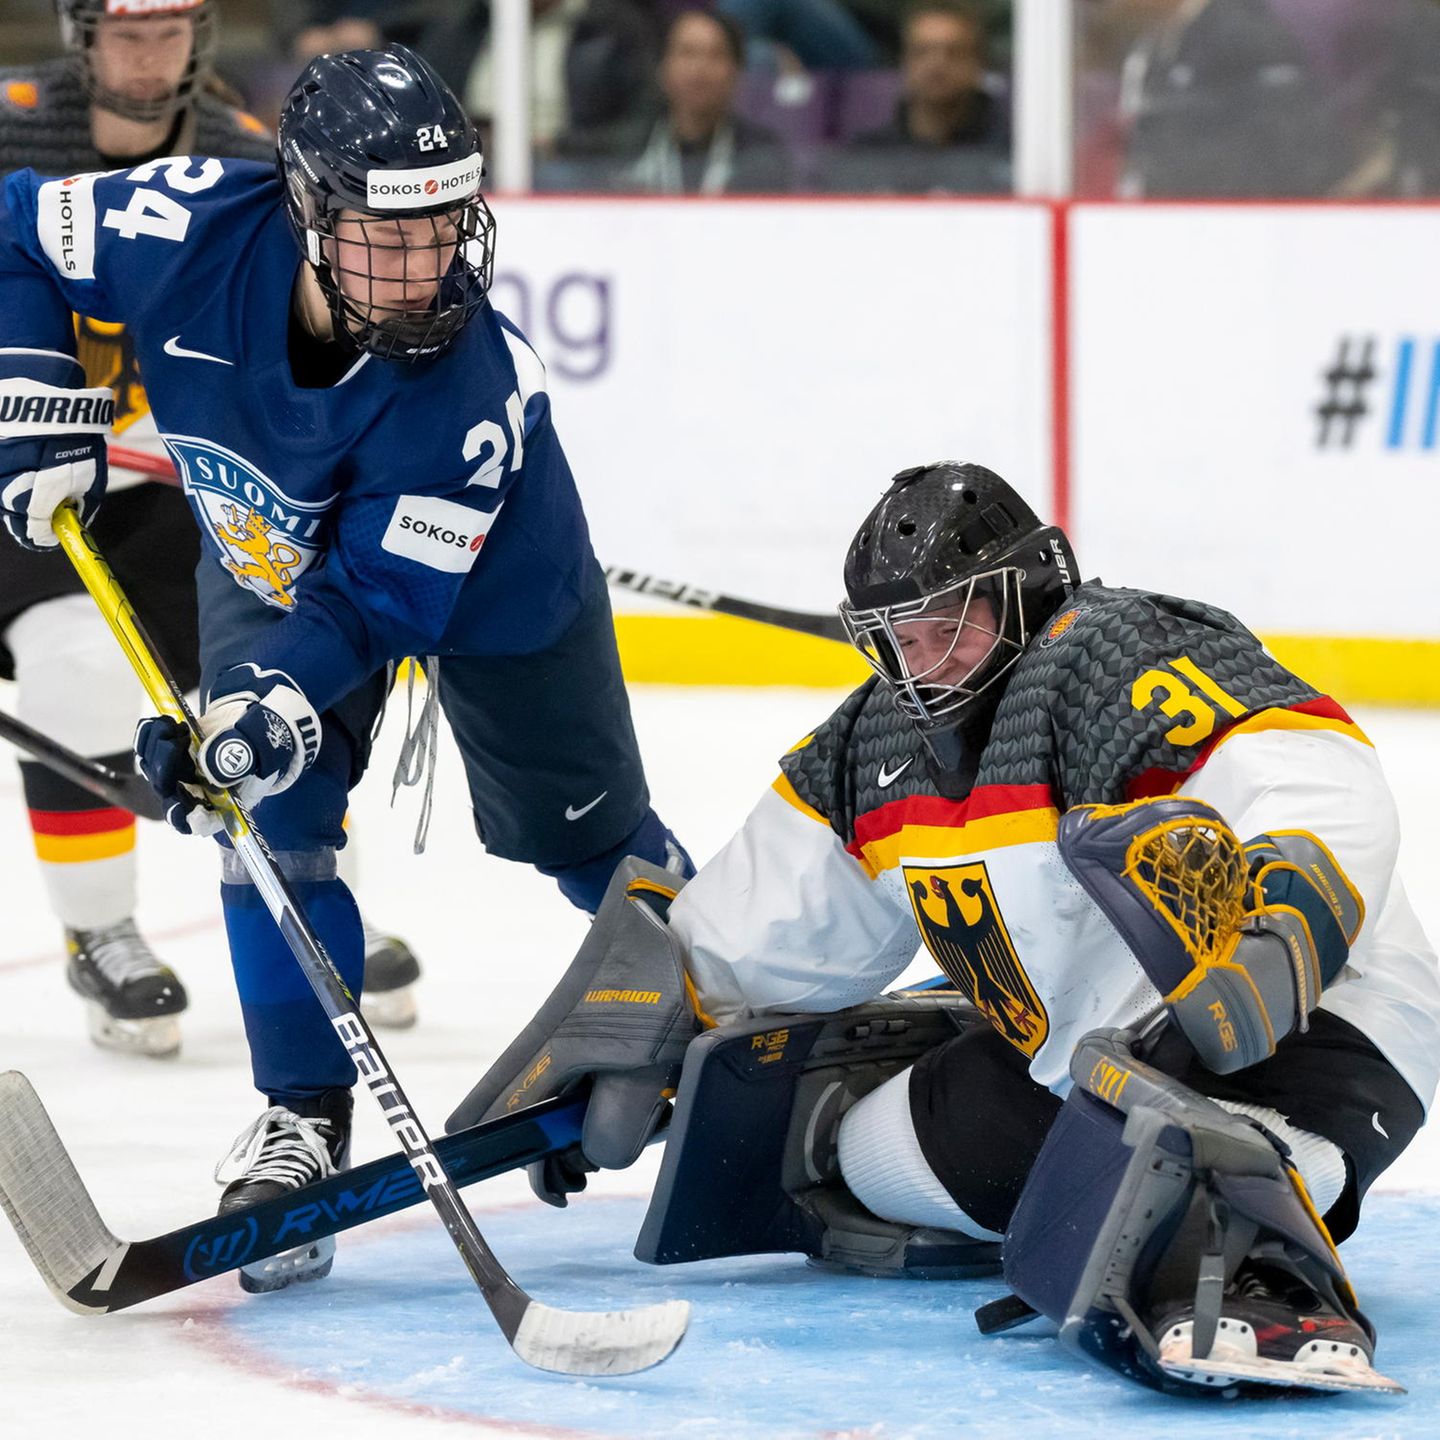 Eishockey-WM in Kanada Deutsches Frauenteam besiegt Frankreich STERN.de